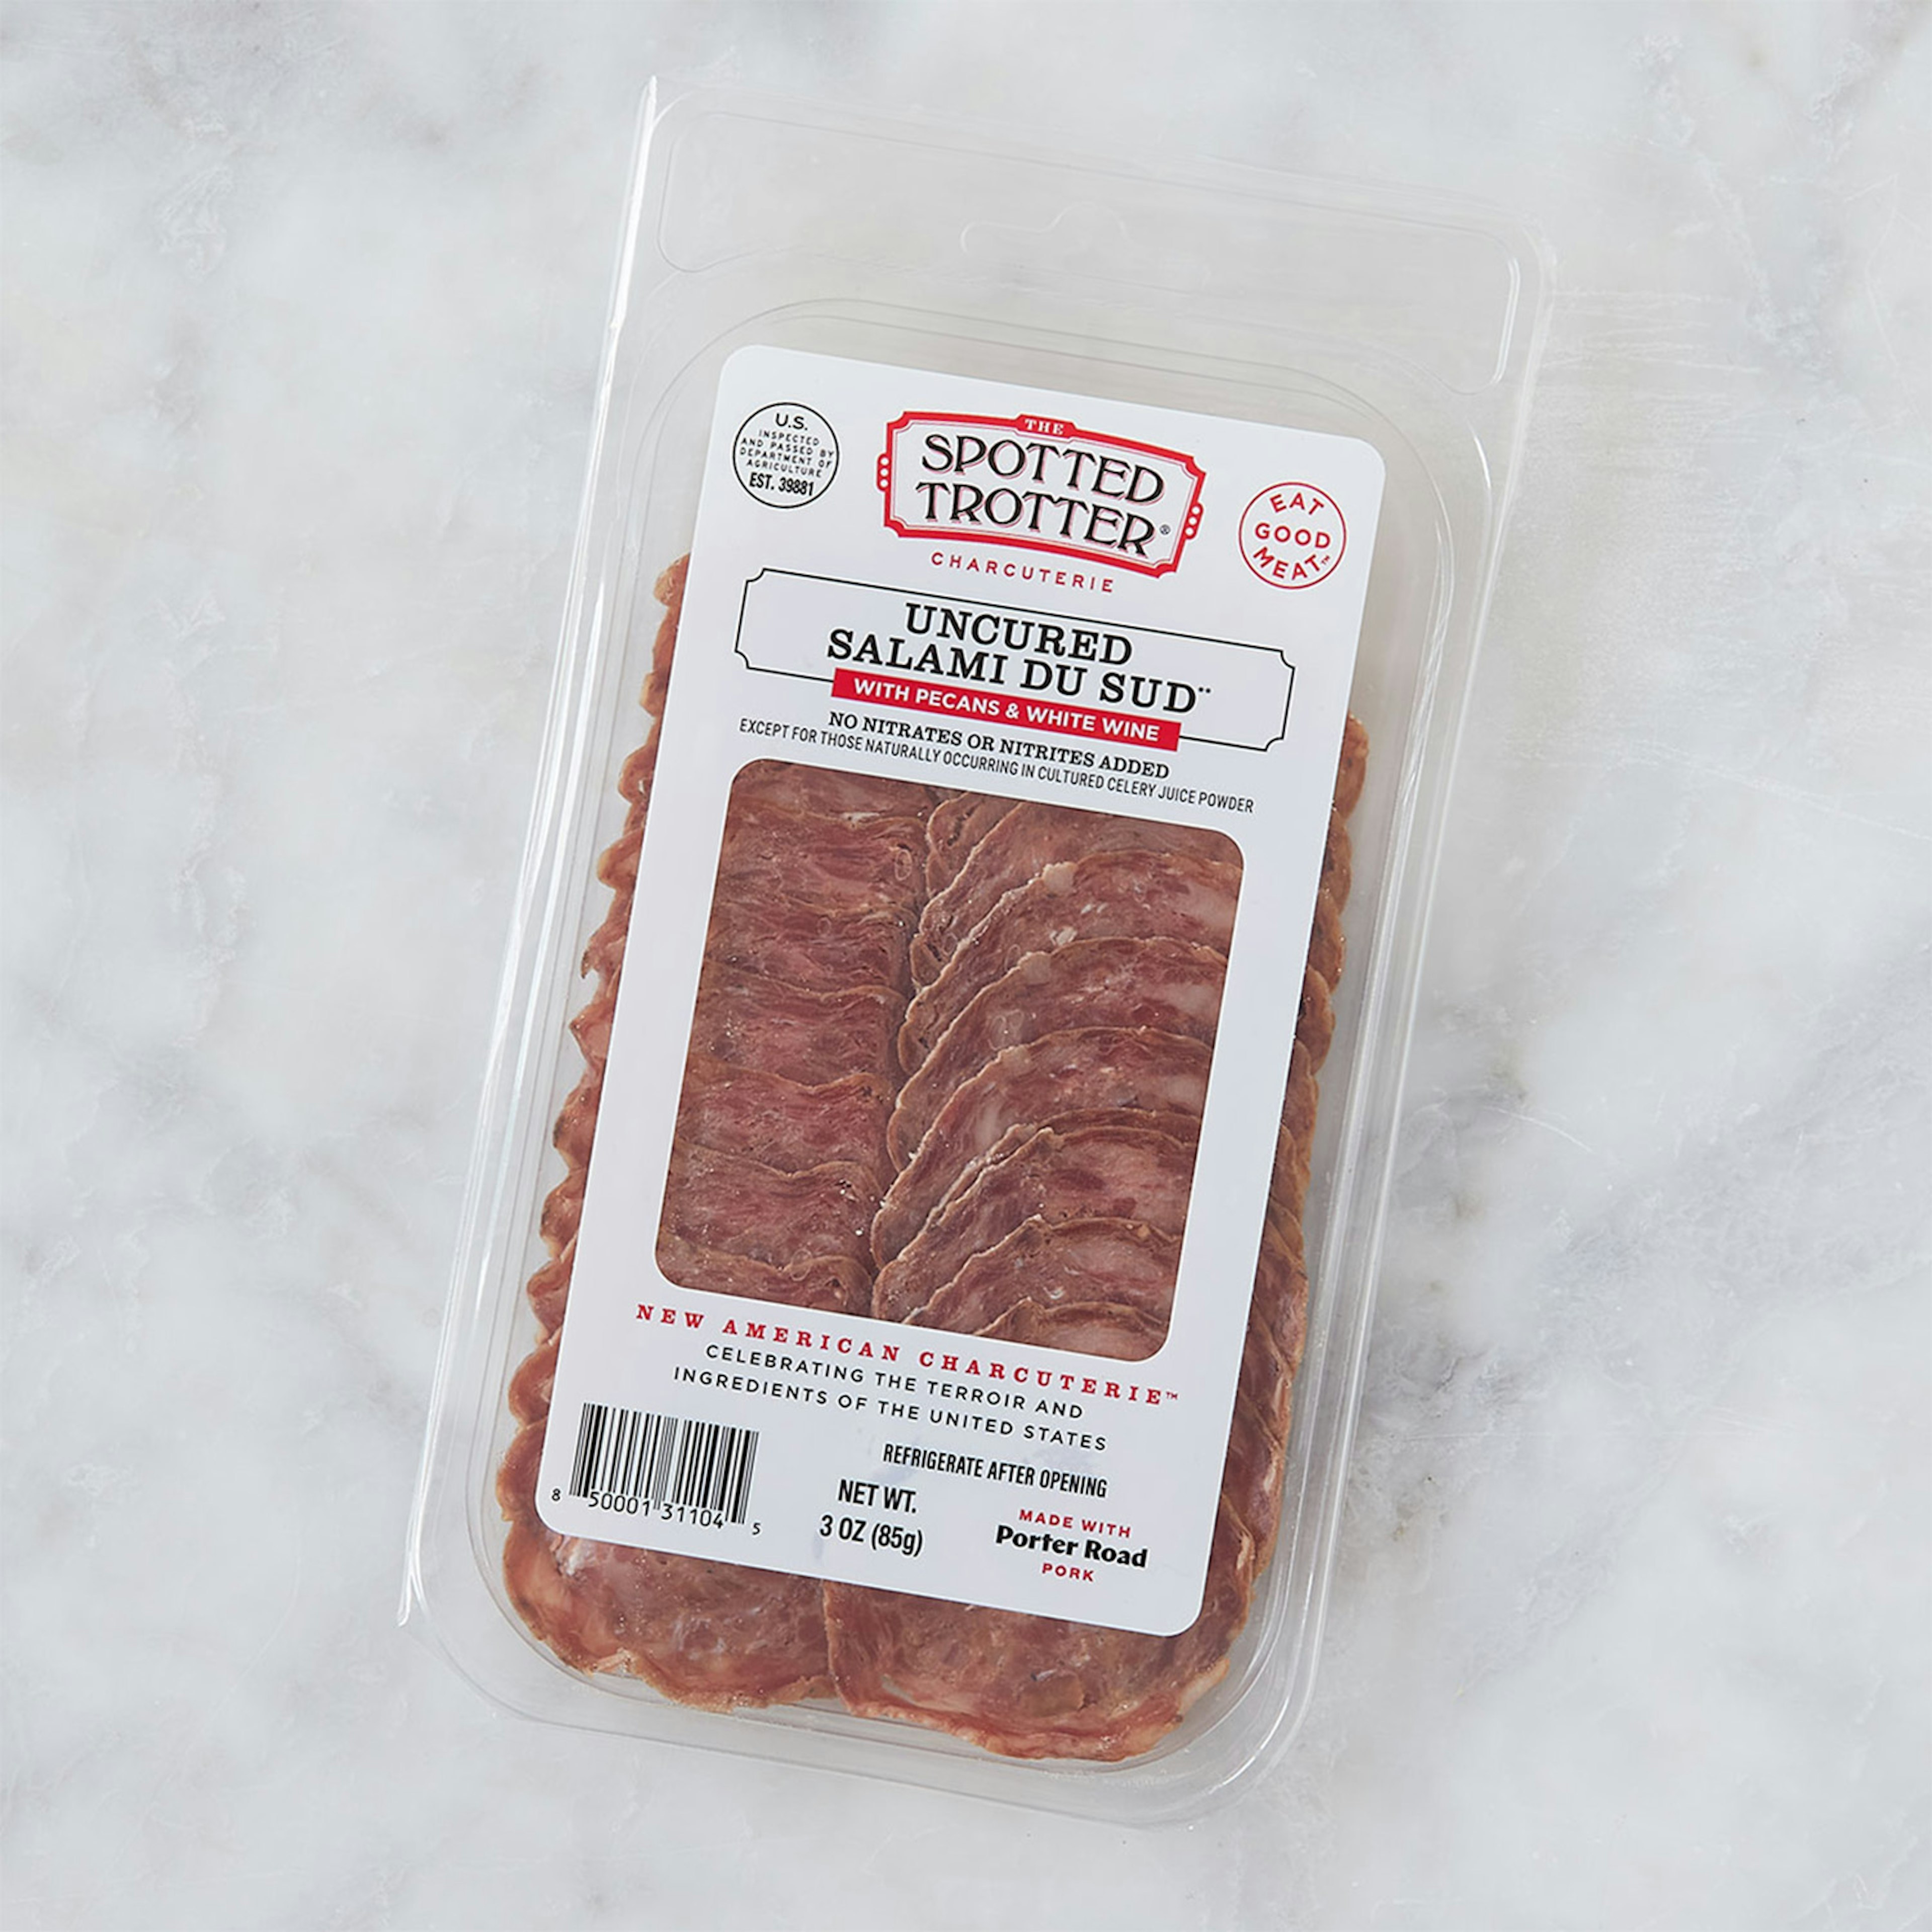 Spotted Trotter Sliced Salami du Sud meats